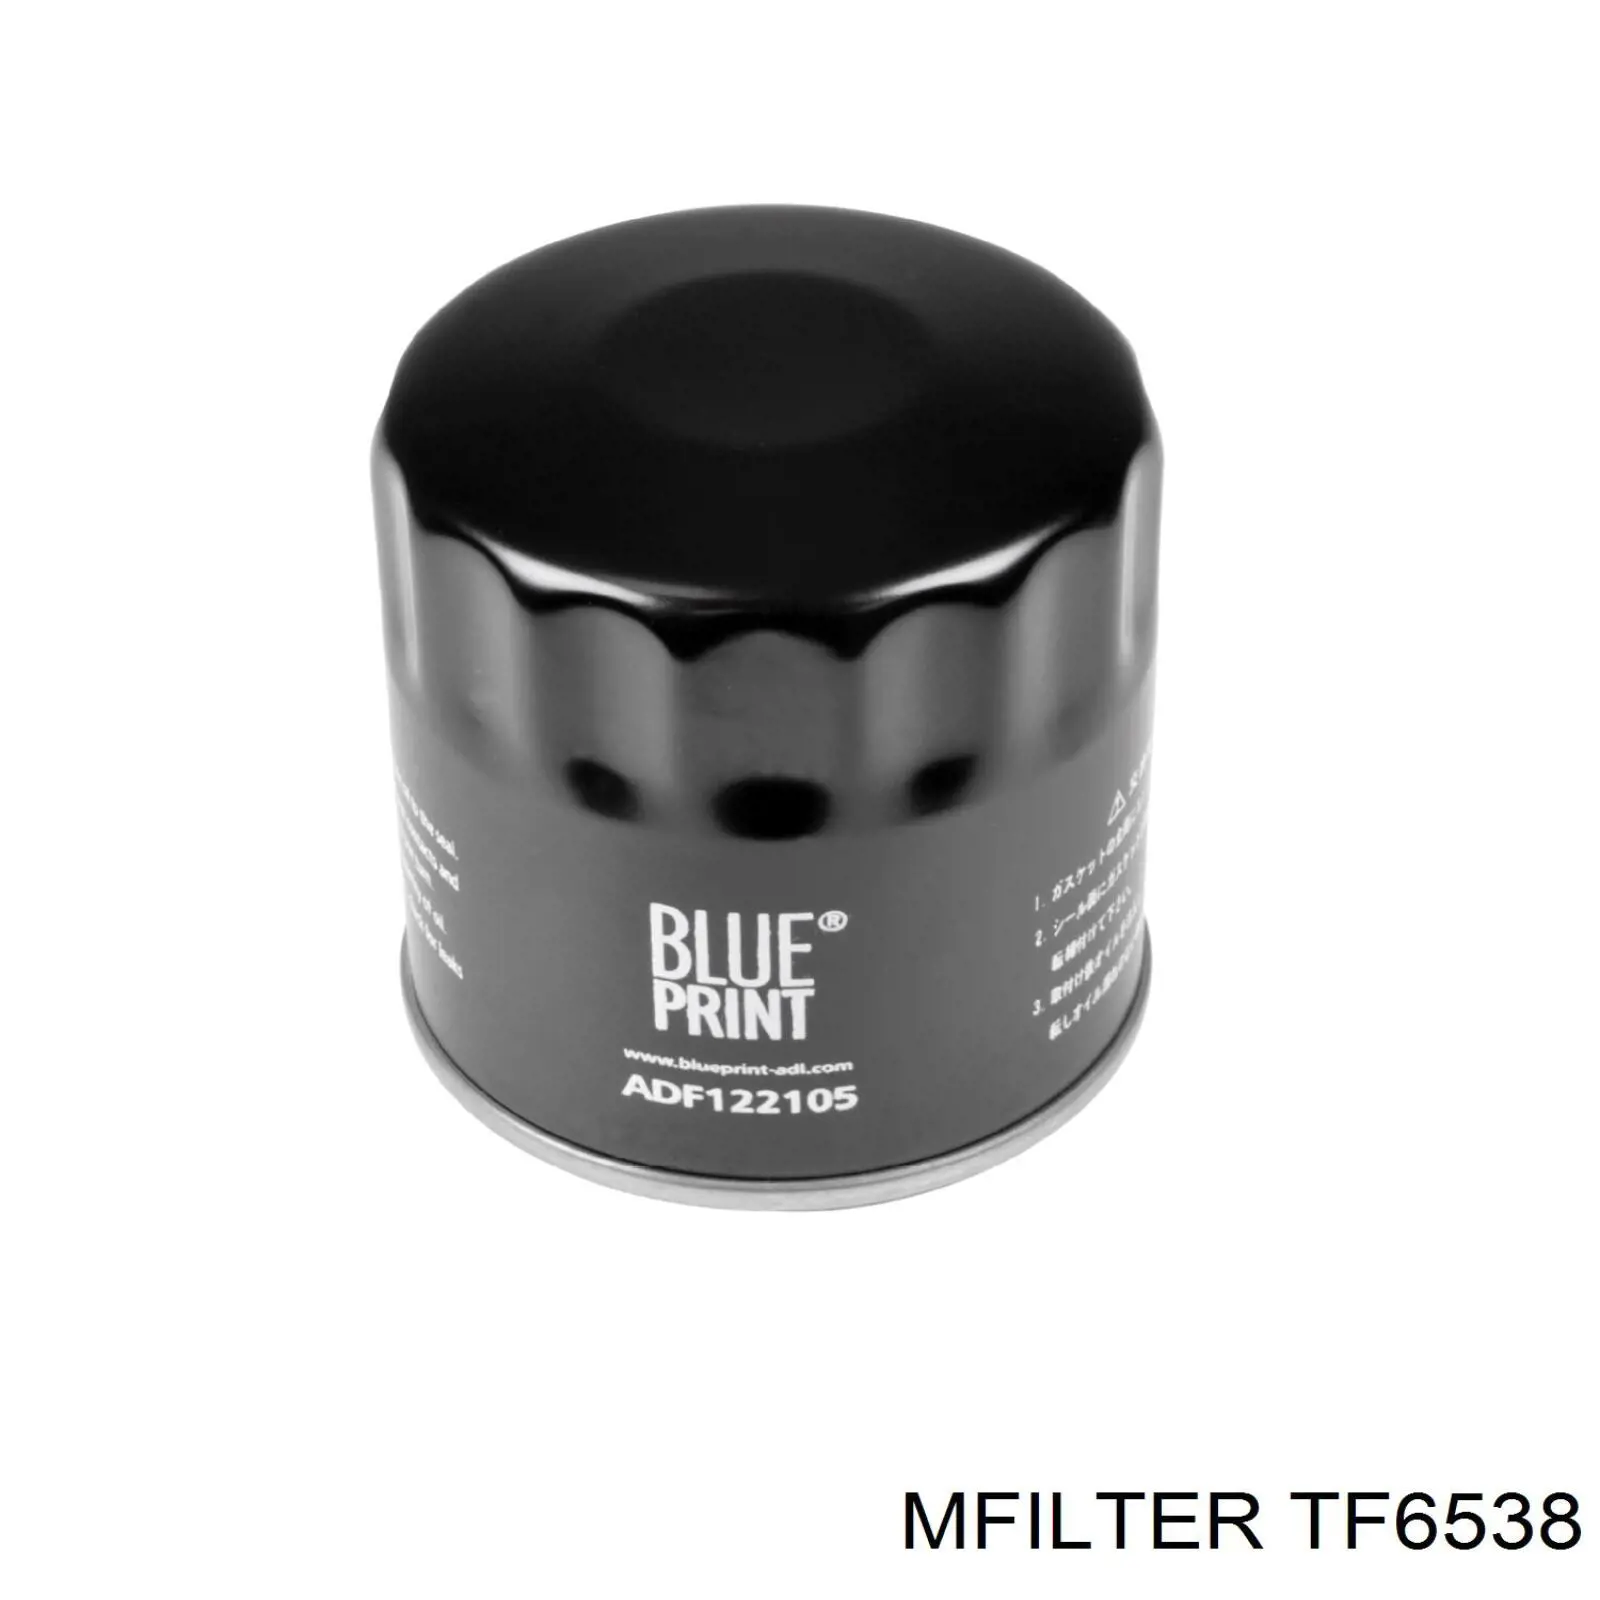 TF 6538 Mfilter filtro de aceite